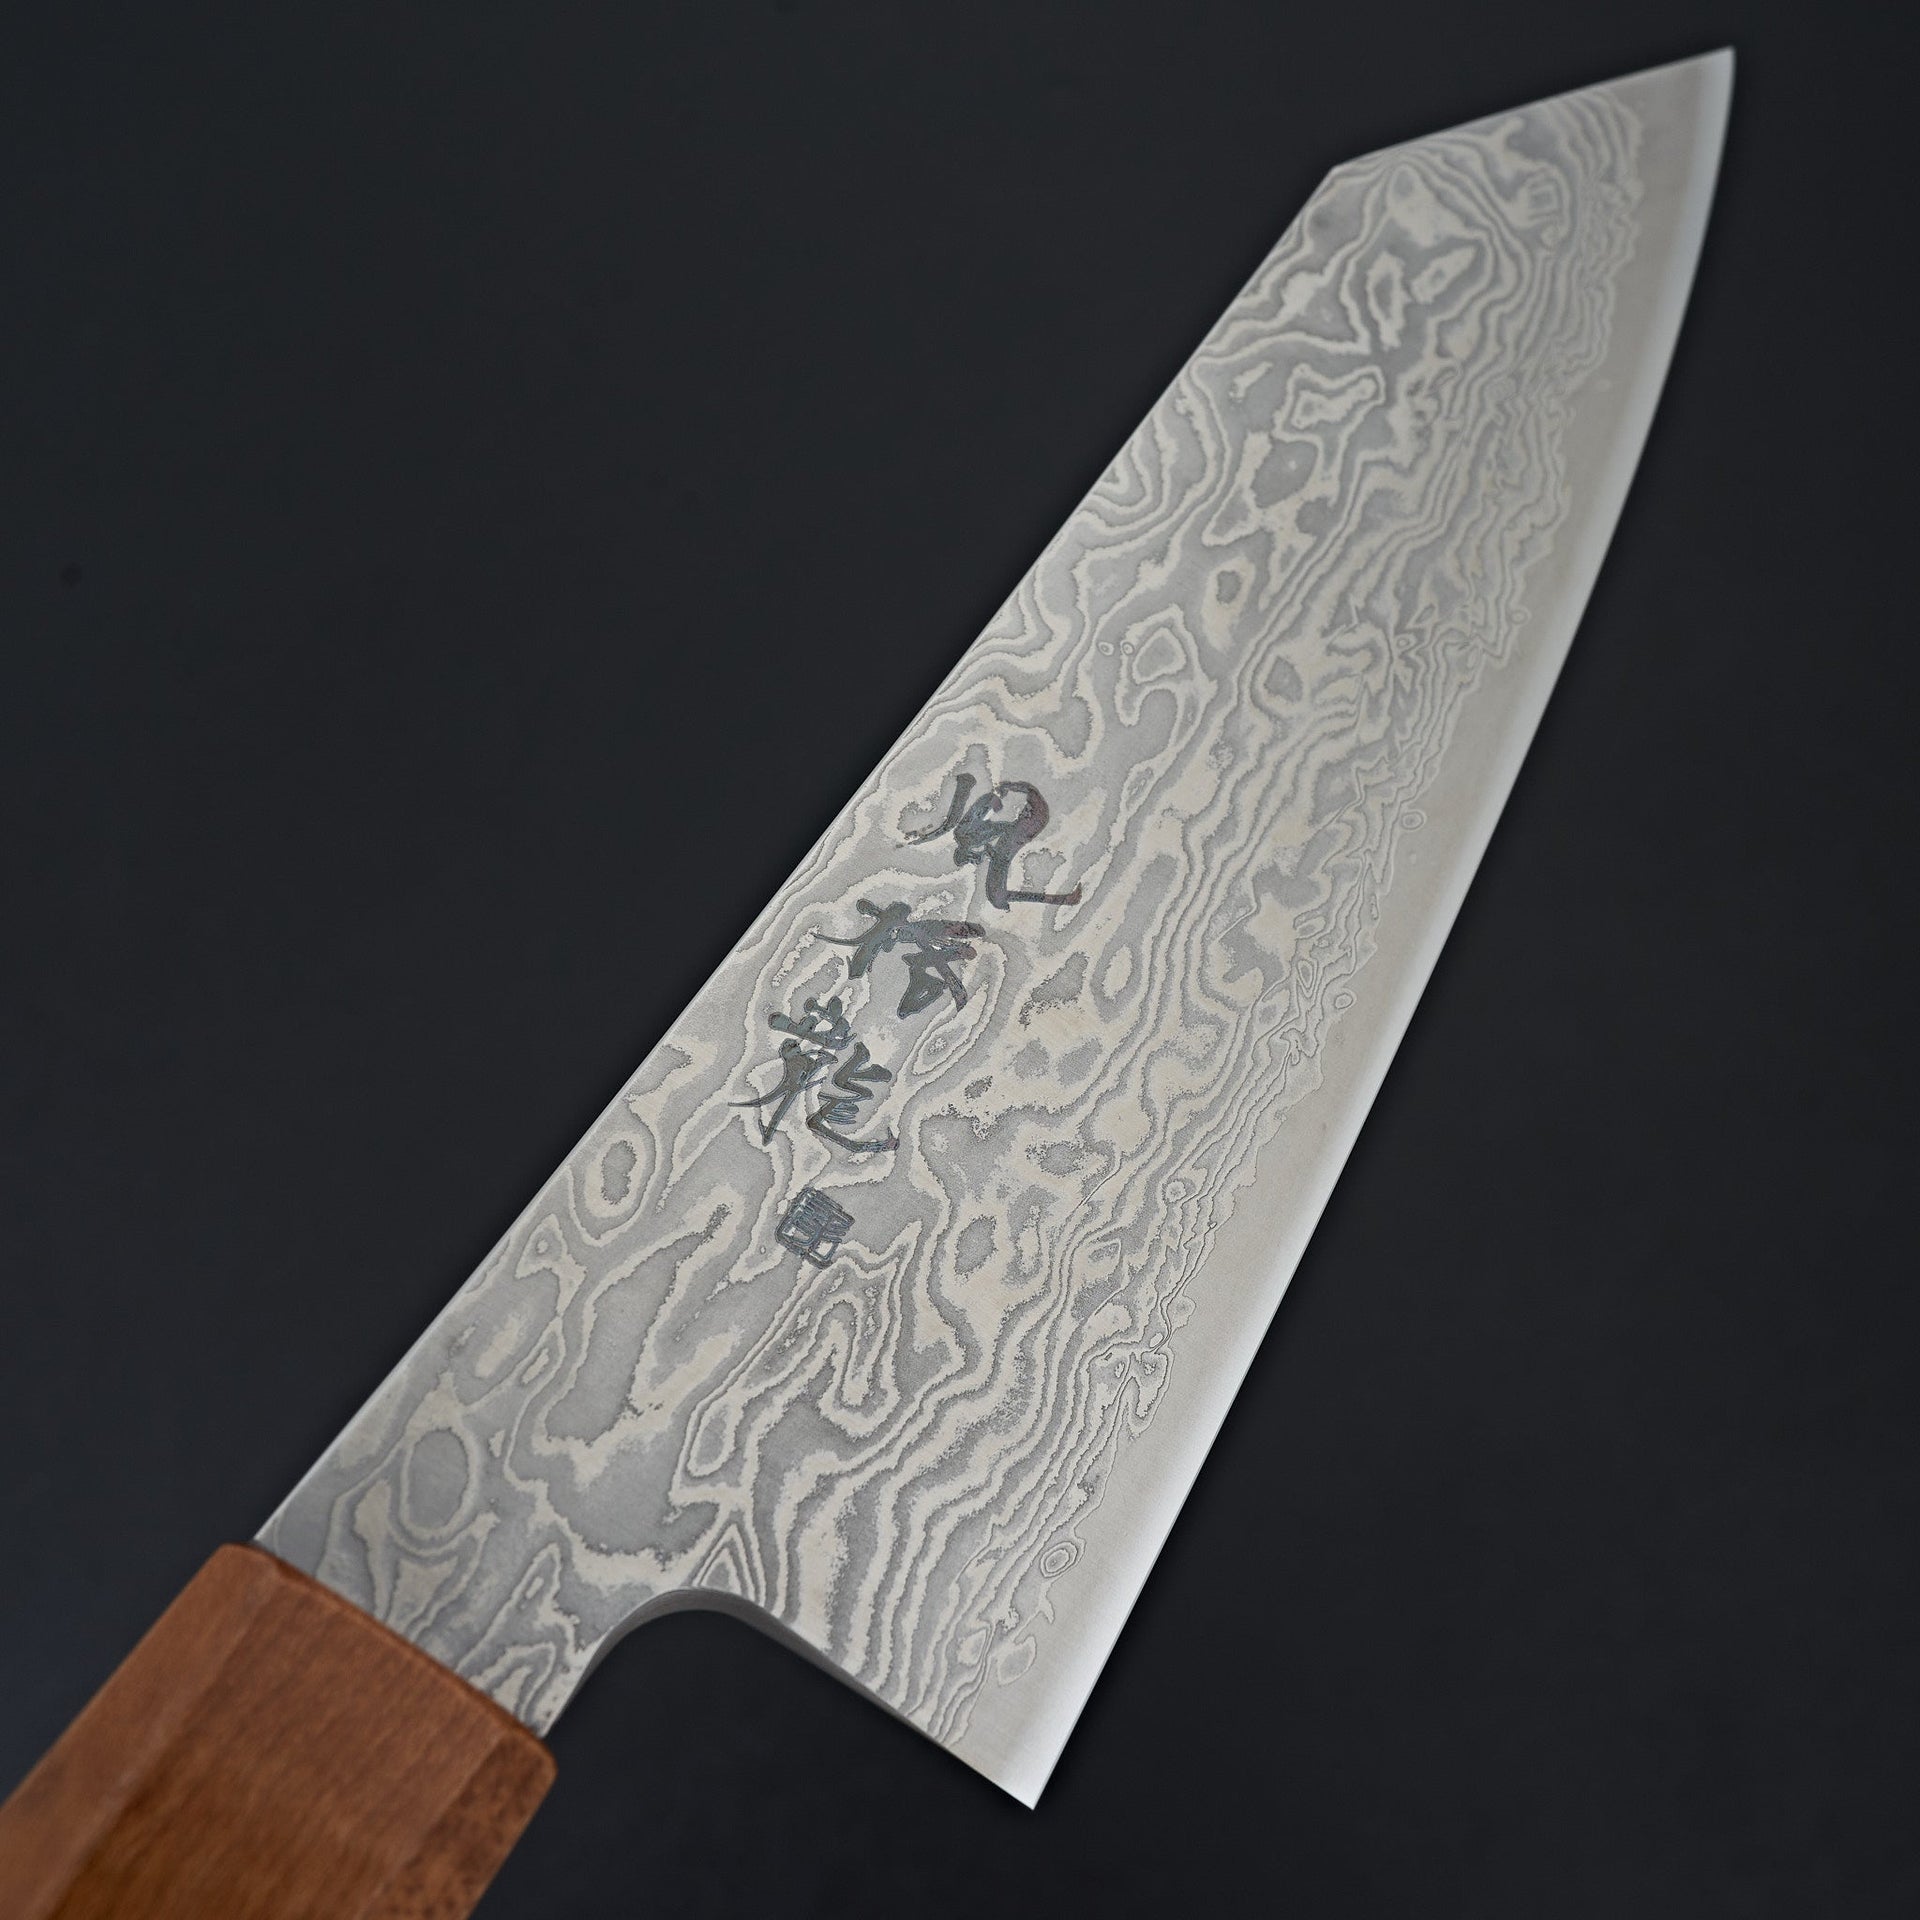 Ryusen Fukakuryu Wa Santoku 170mm-Knife-Ryusen-Carbon Knife Co